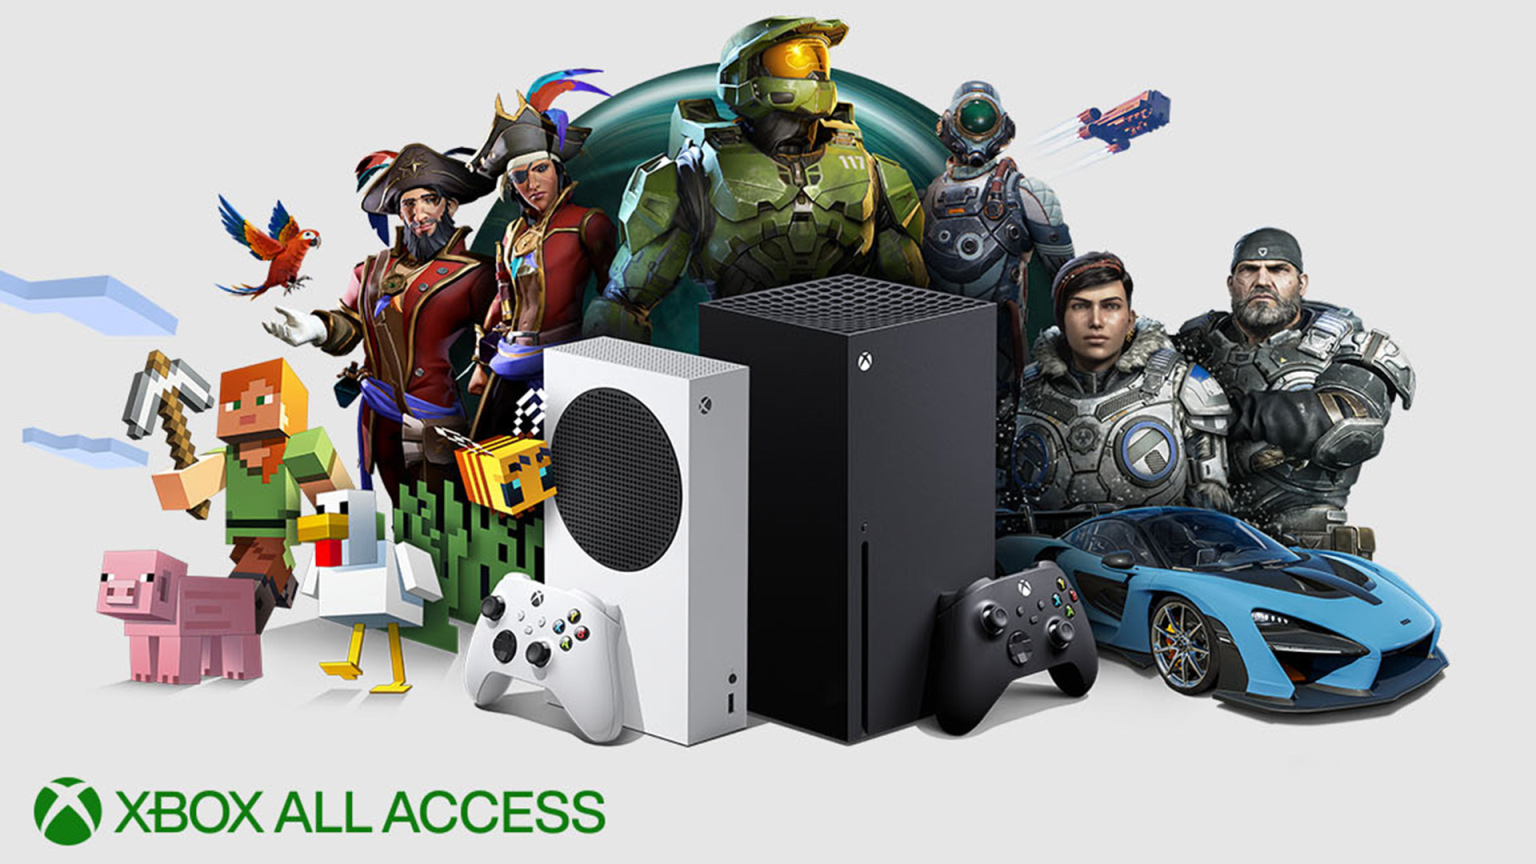 Xbox All Access is vandaag beschikbaar in Duitsland en in 2022 in Zwitserland!  |  Xbox One